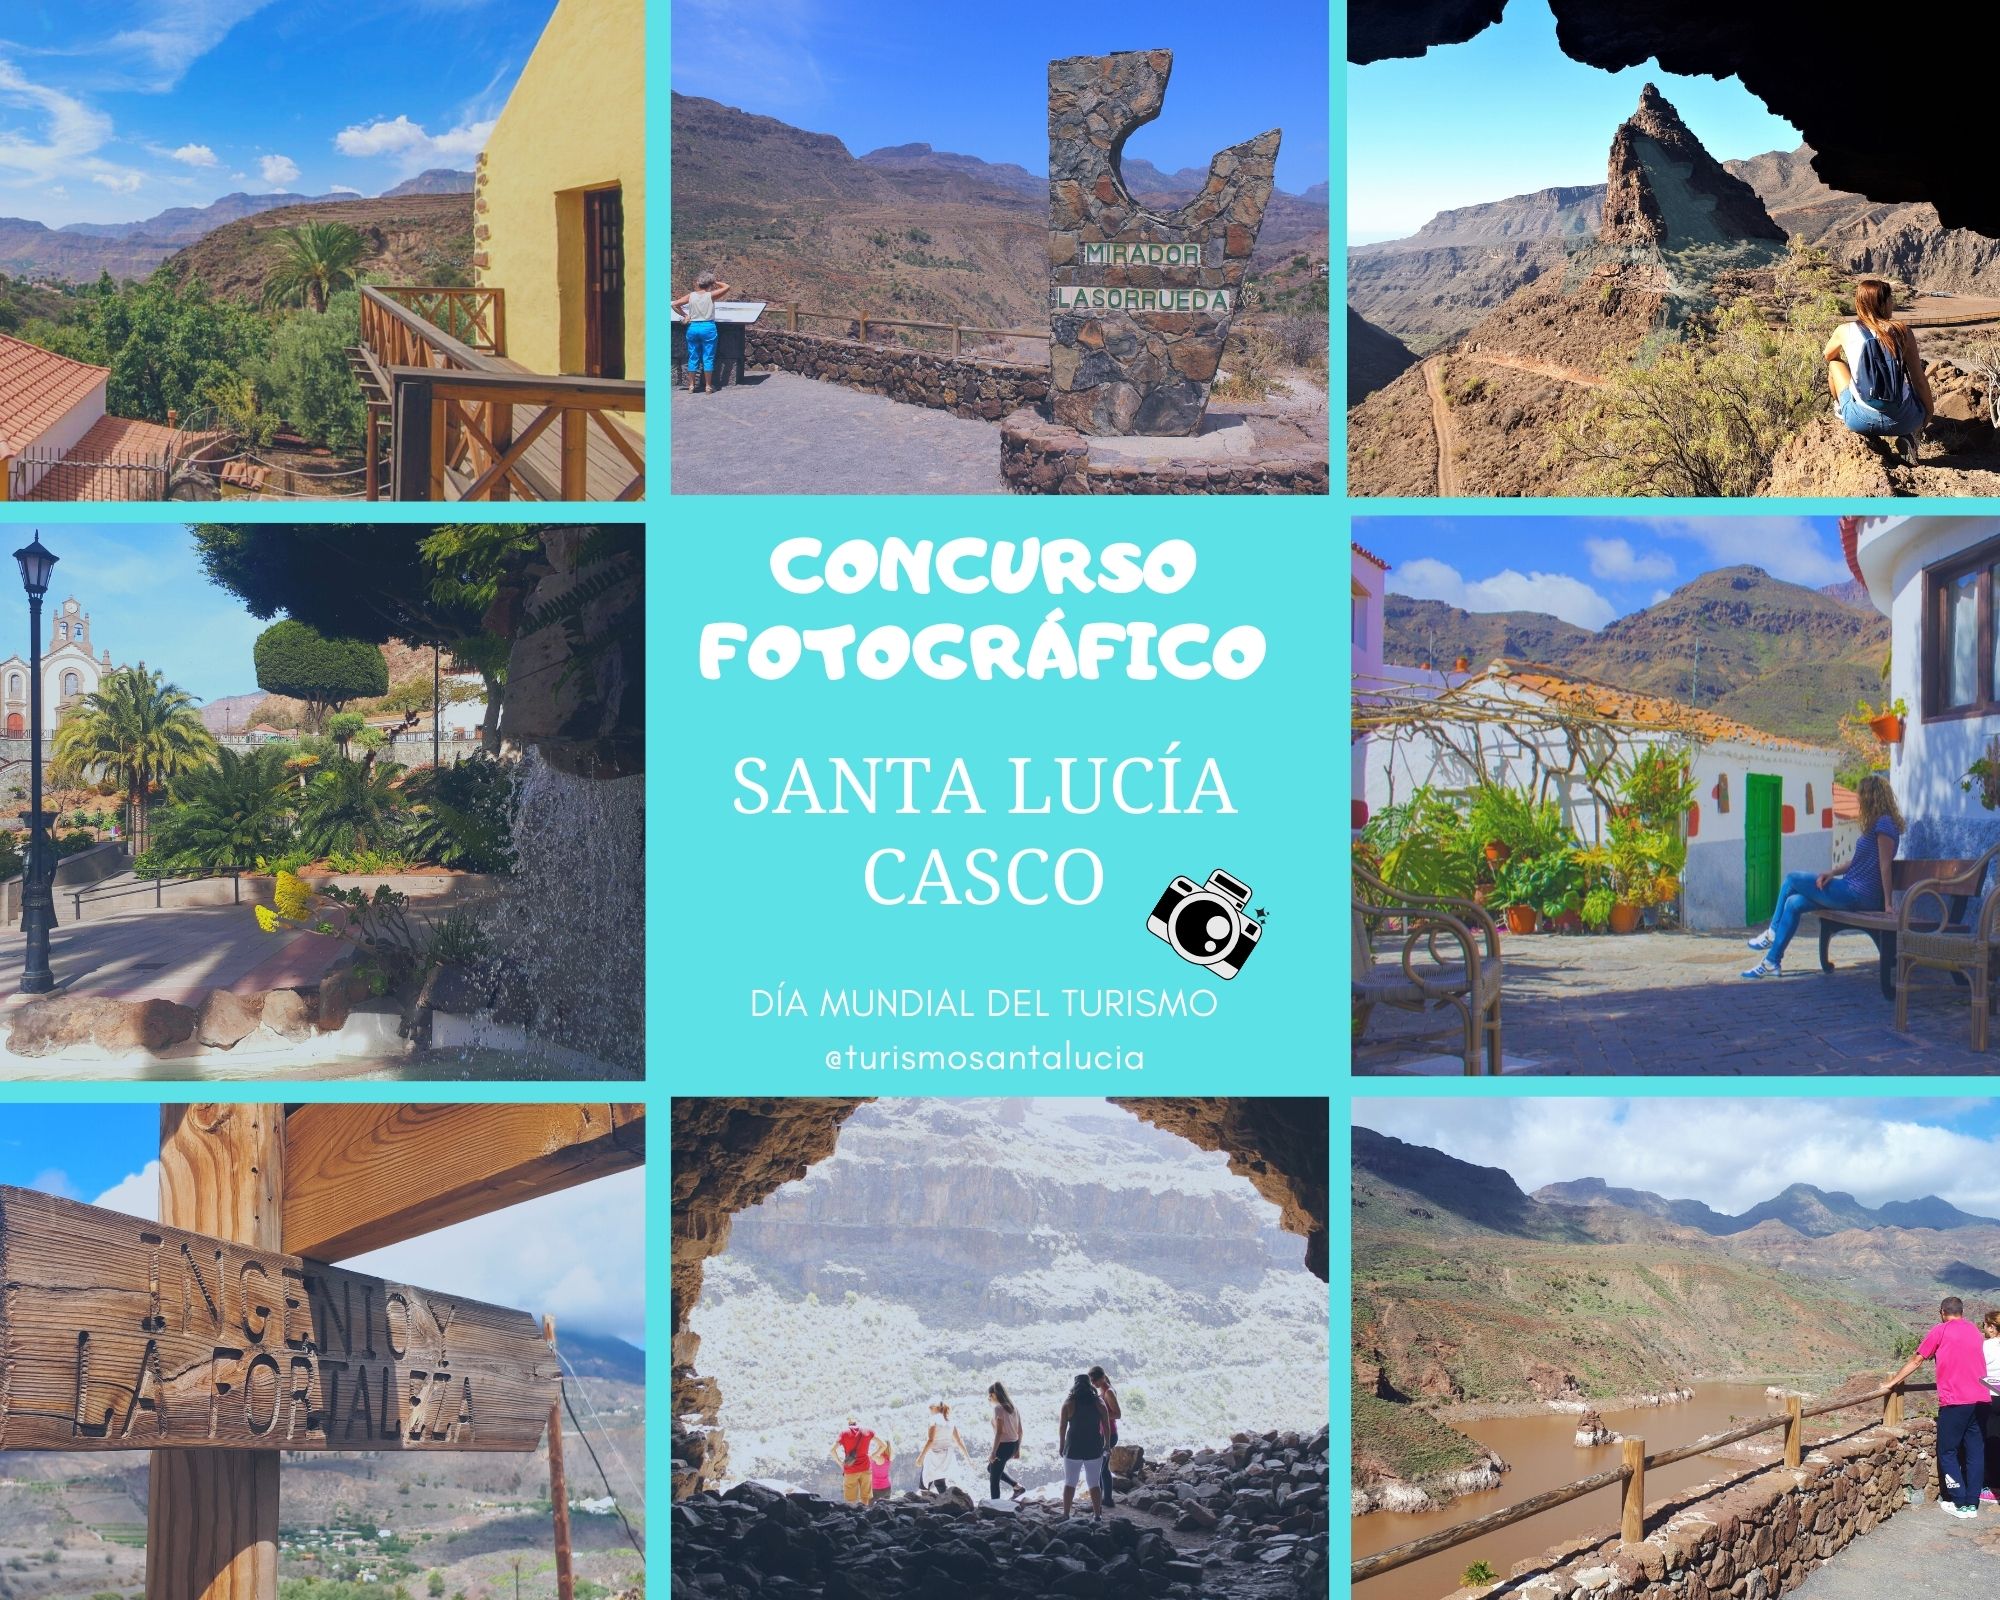 Un concurso fotográfico 'express' abierto a la ciudadanía promocionará el casco de Santa Lucía en las redes este fin de semana